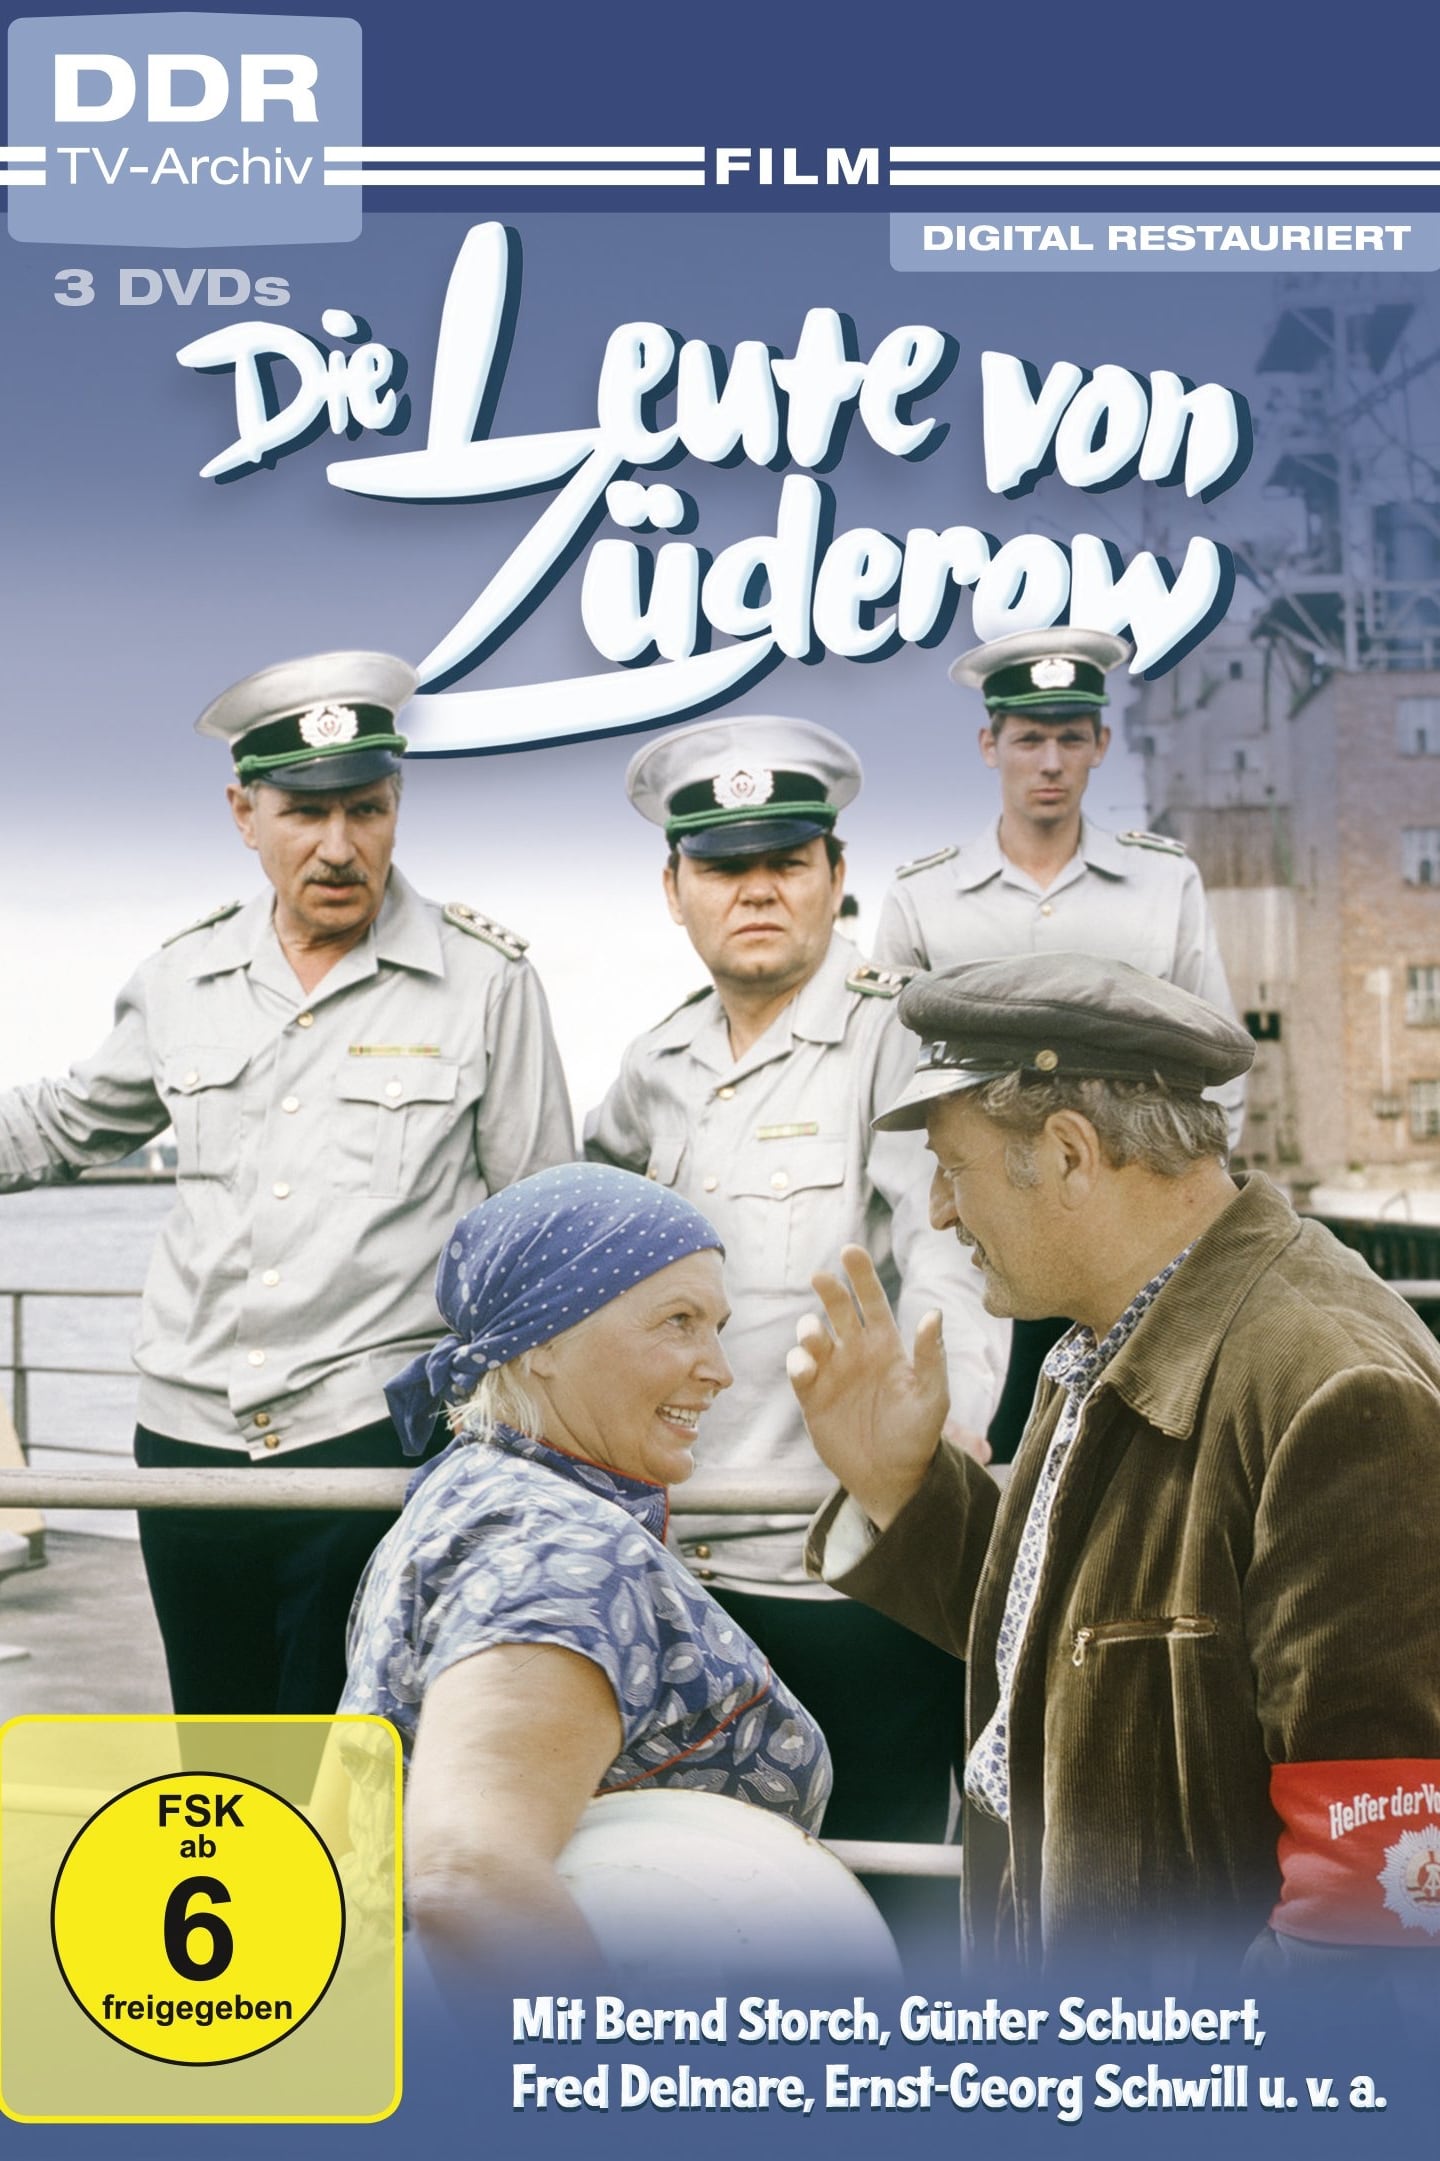 Die Leute von Züderow (1985)